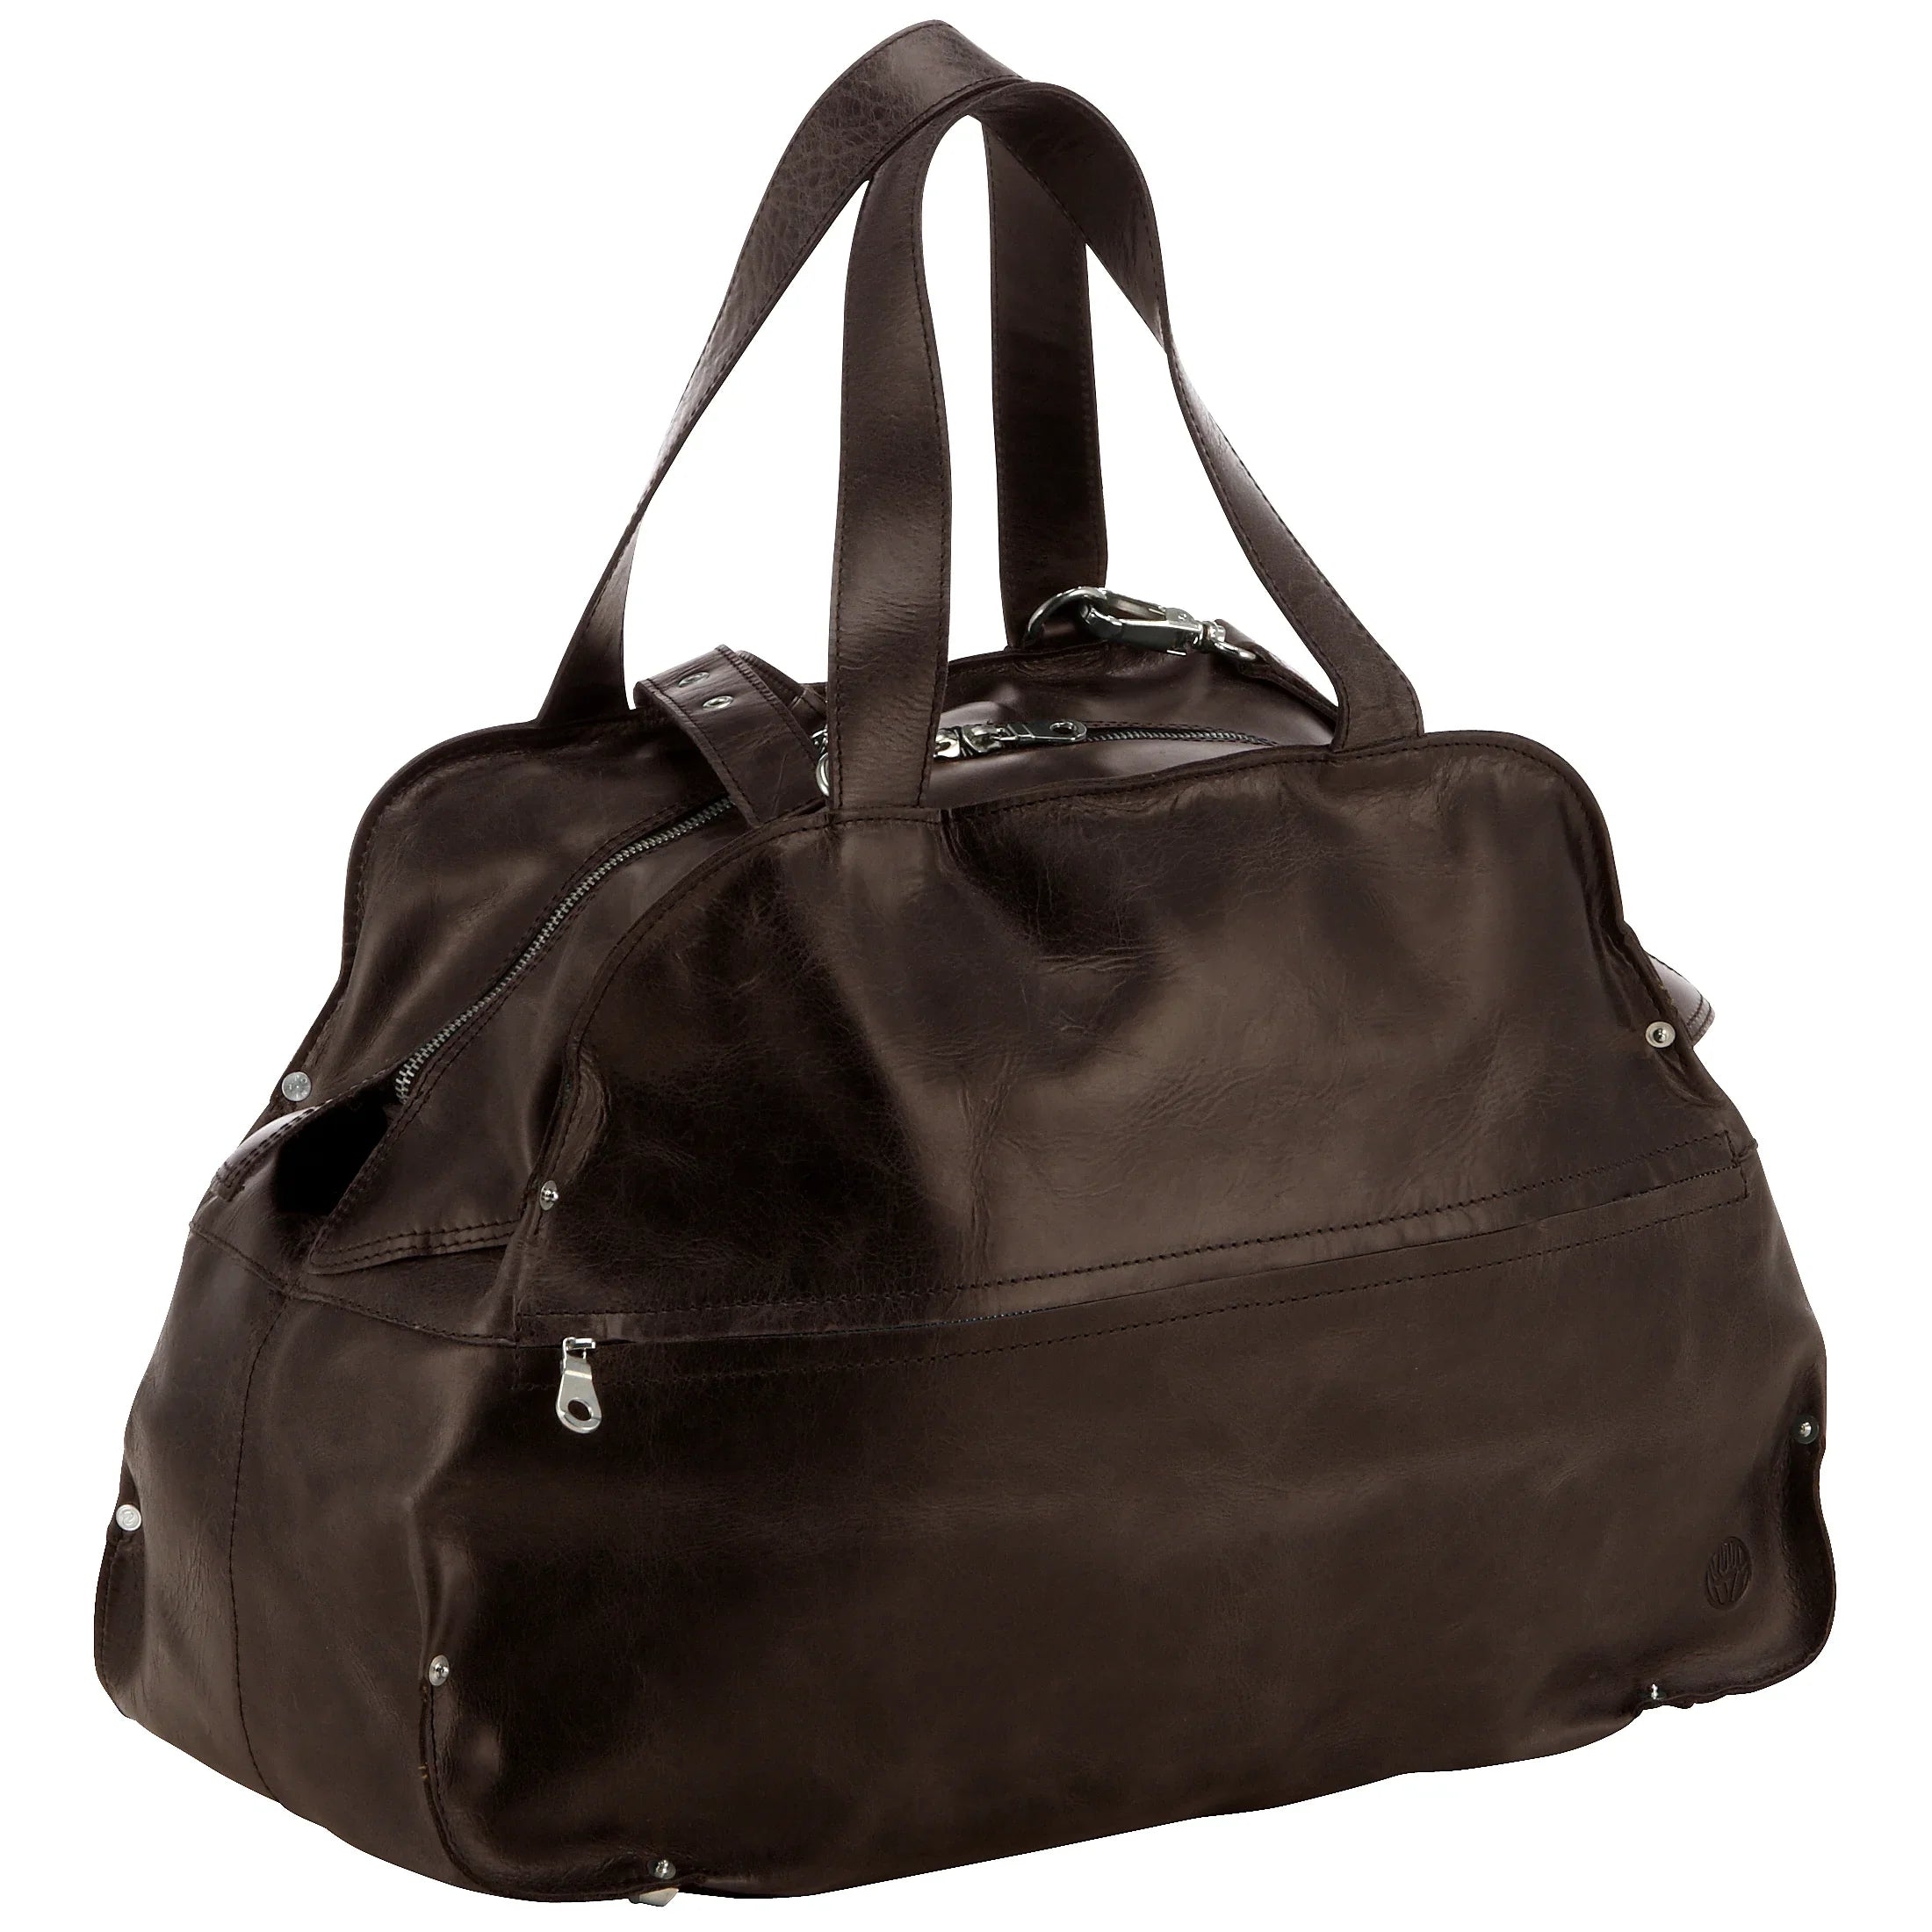 Harolds Landscape leather travel bag 51 cm - brown